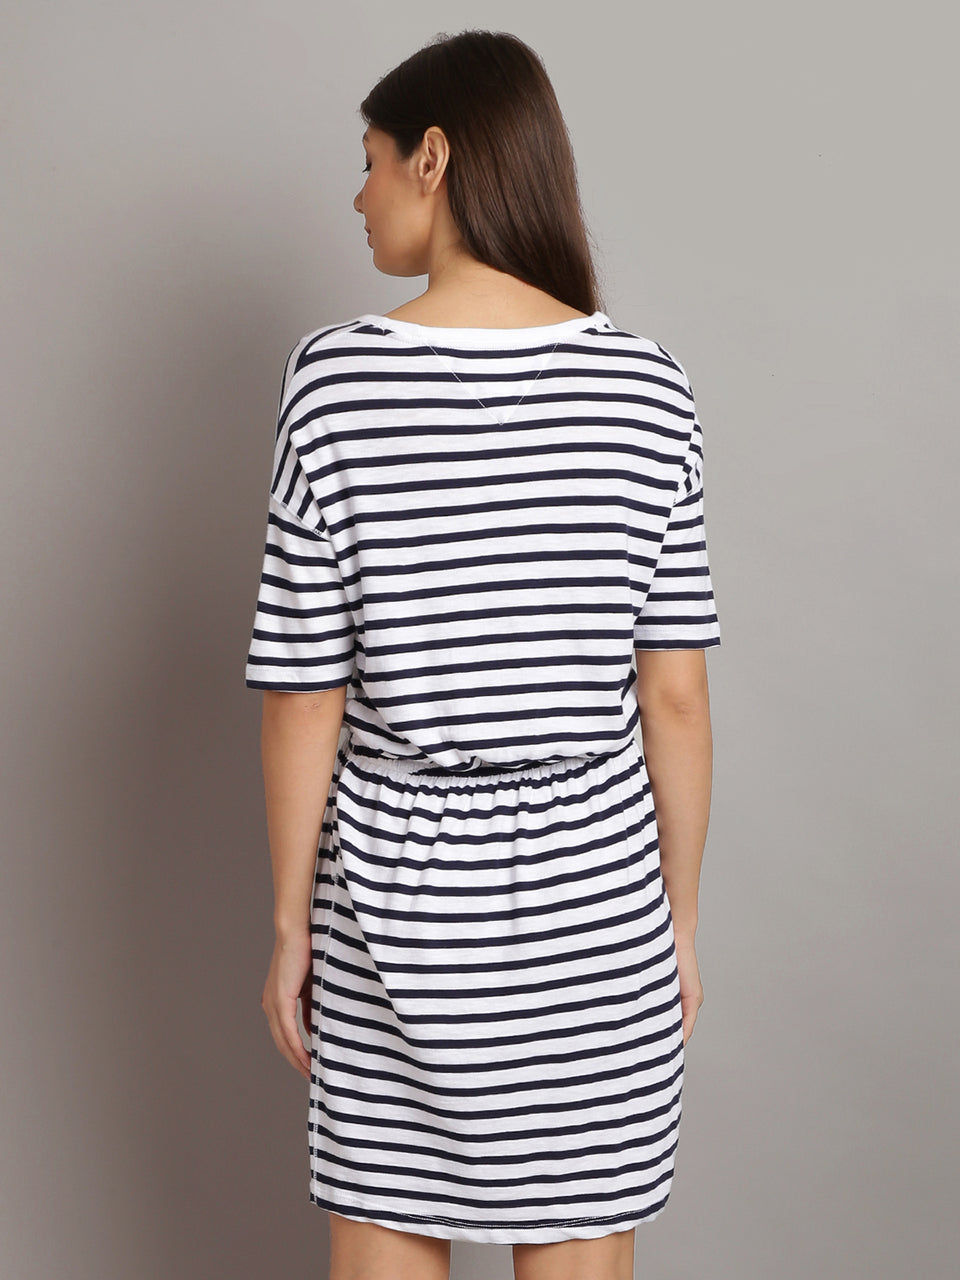 women black & white striped t-shirt dress